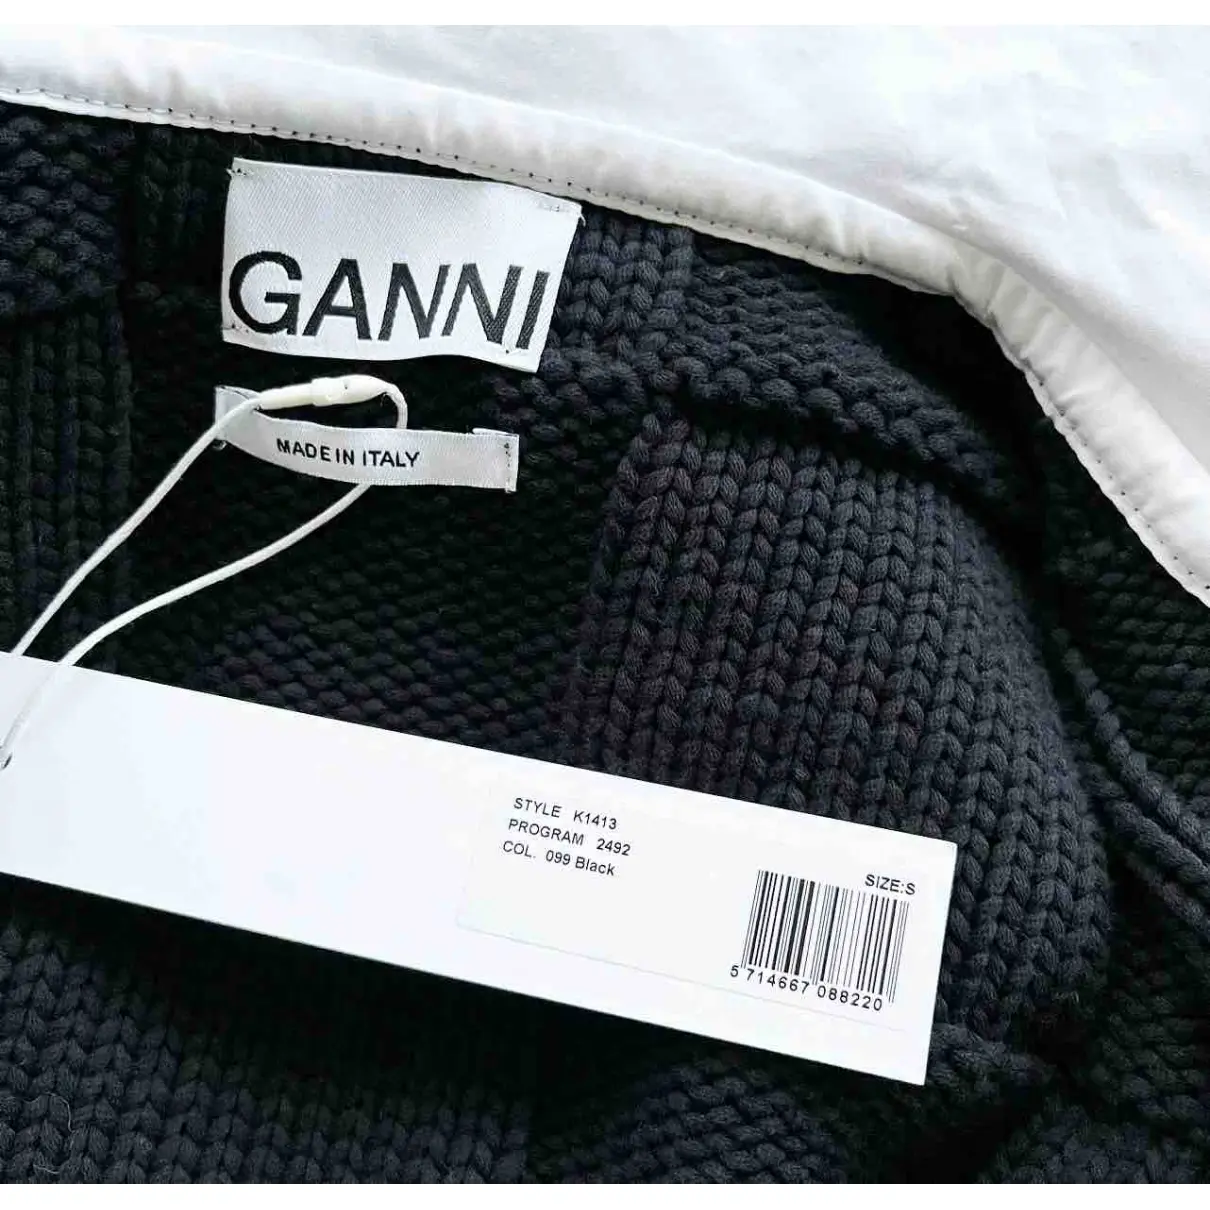 Knitwear Ganni